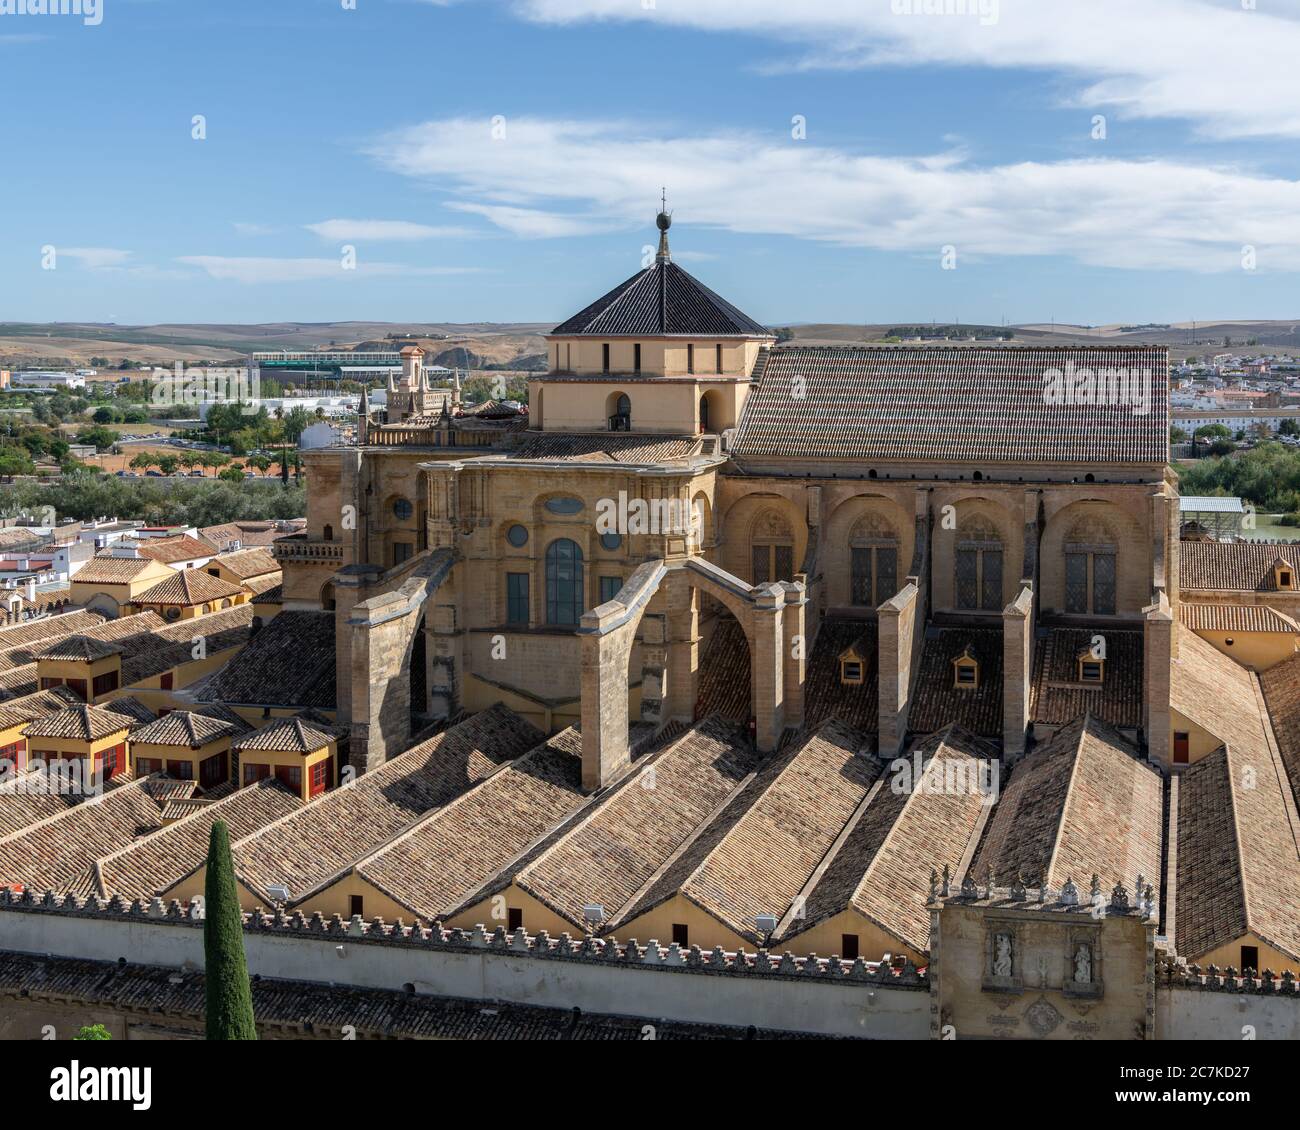 L'edificio della cattedrale gotica/manierista di Cordova sorge sul tetto dell'originale sala ipostile della moschea Foto Stock